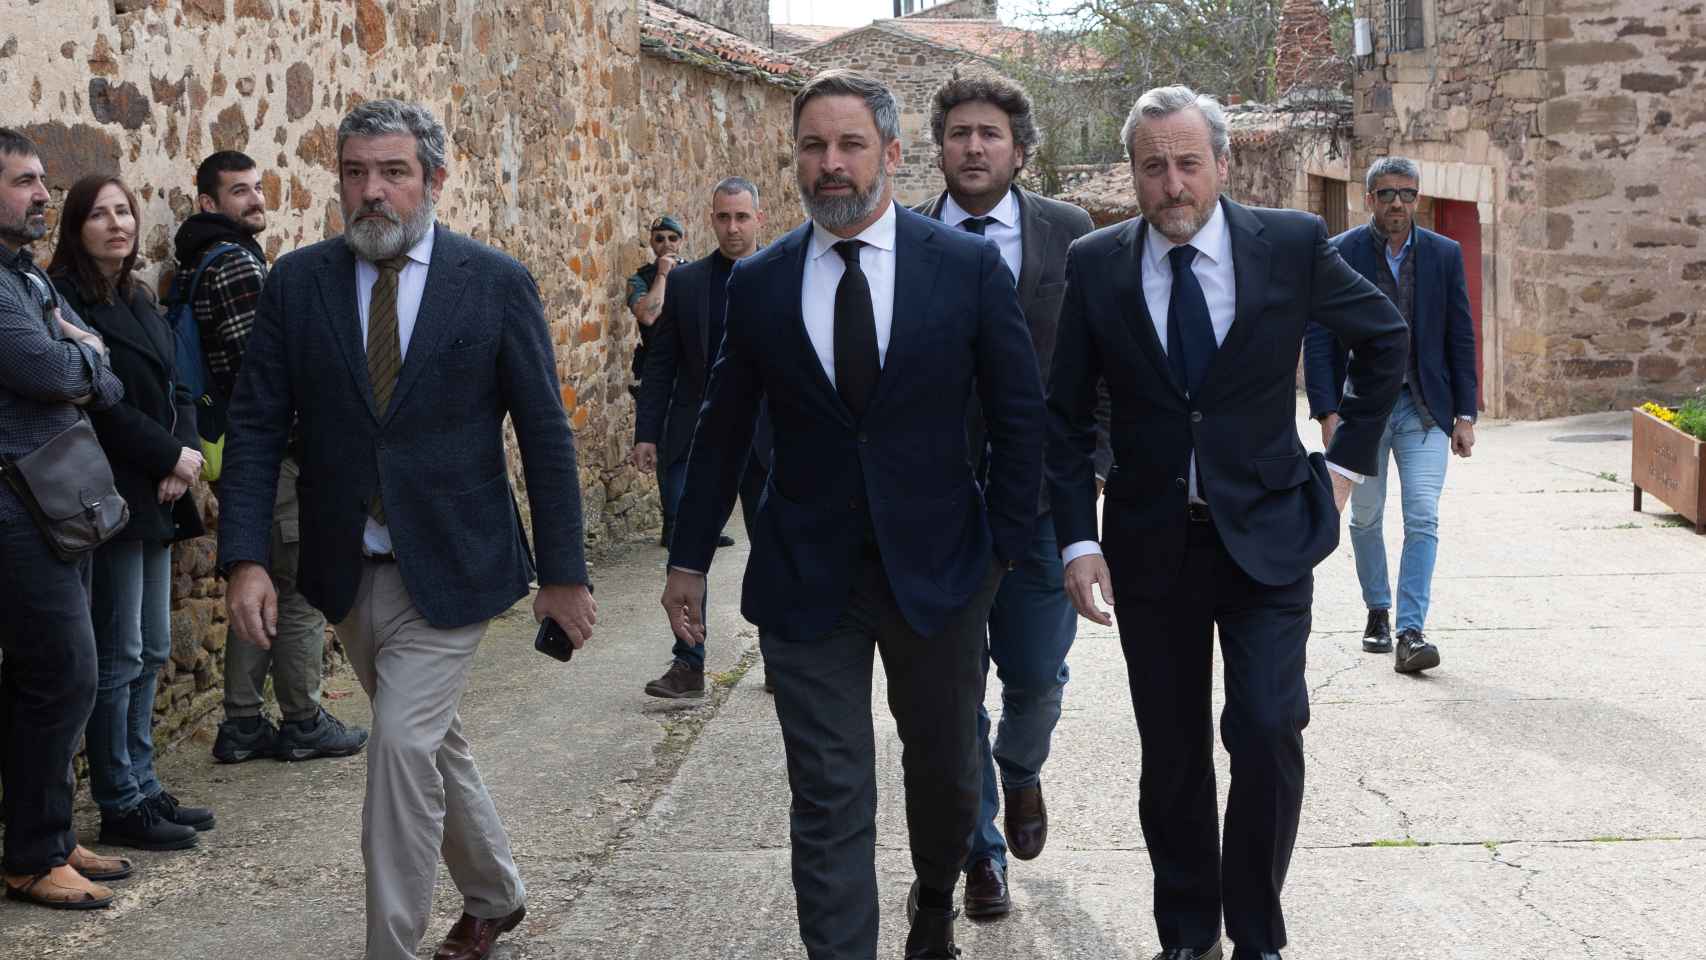 Santiago Abascal en el funeral de Sánchez Dragó